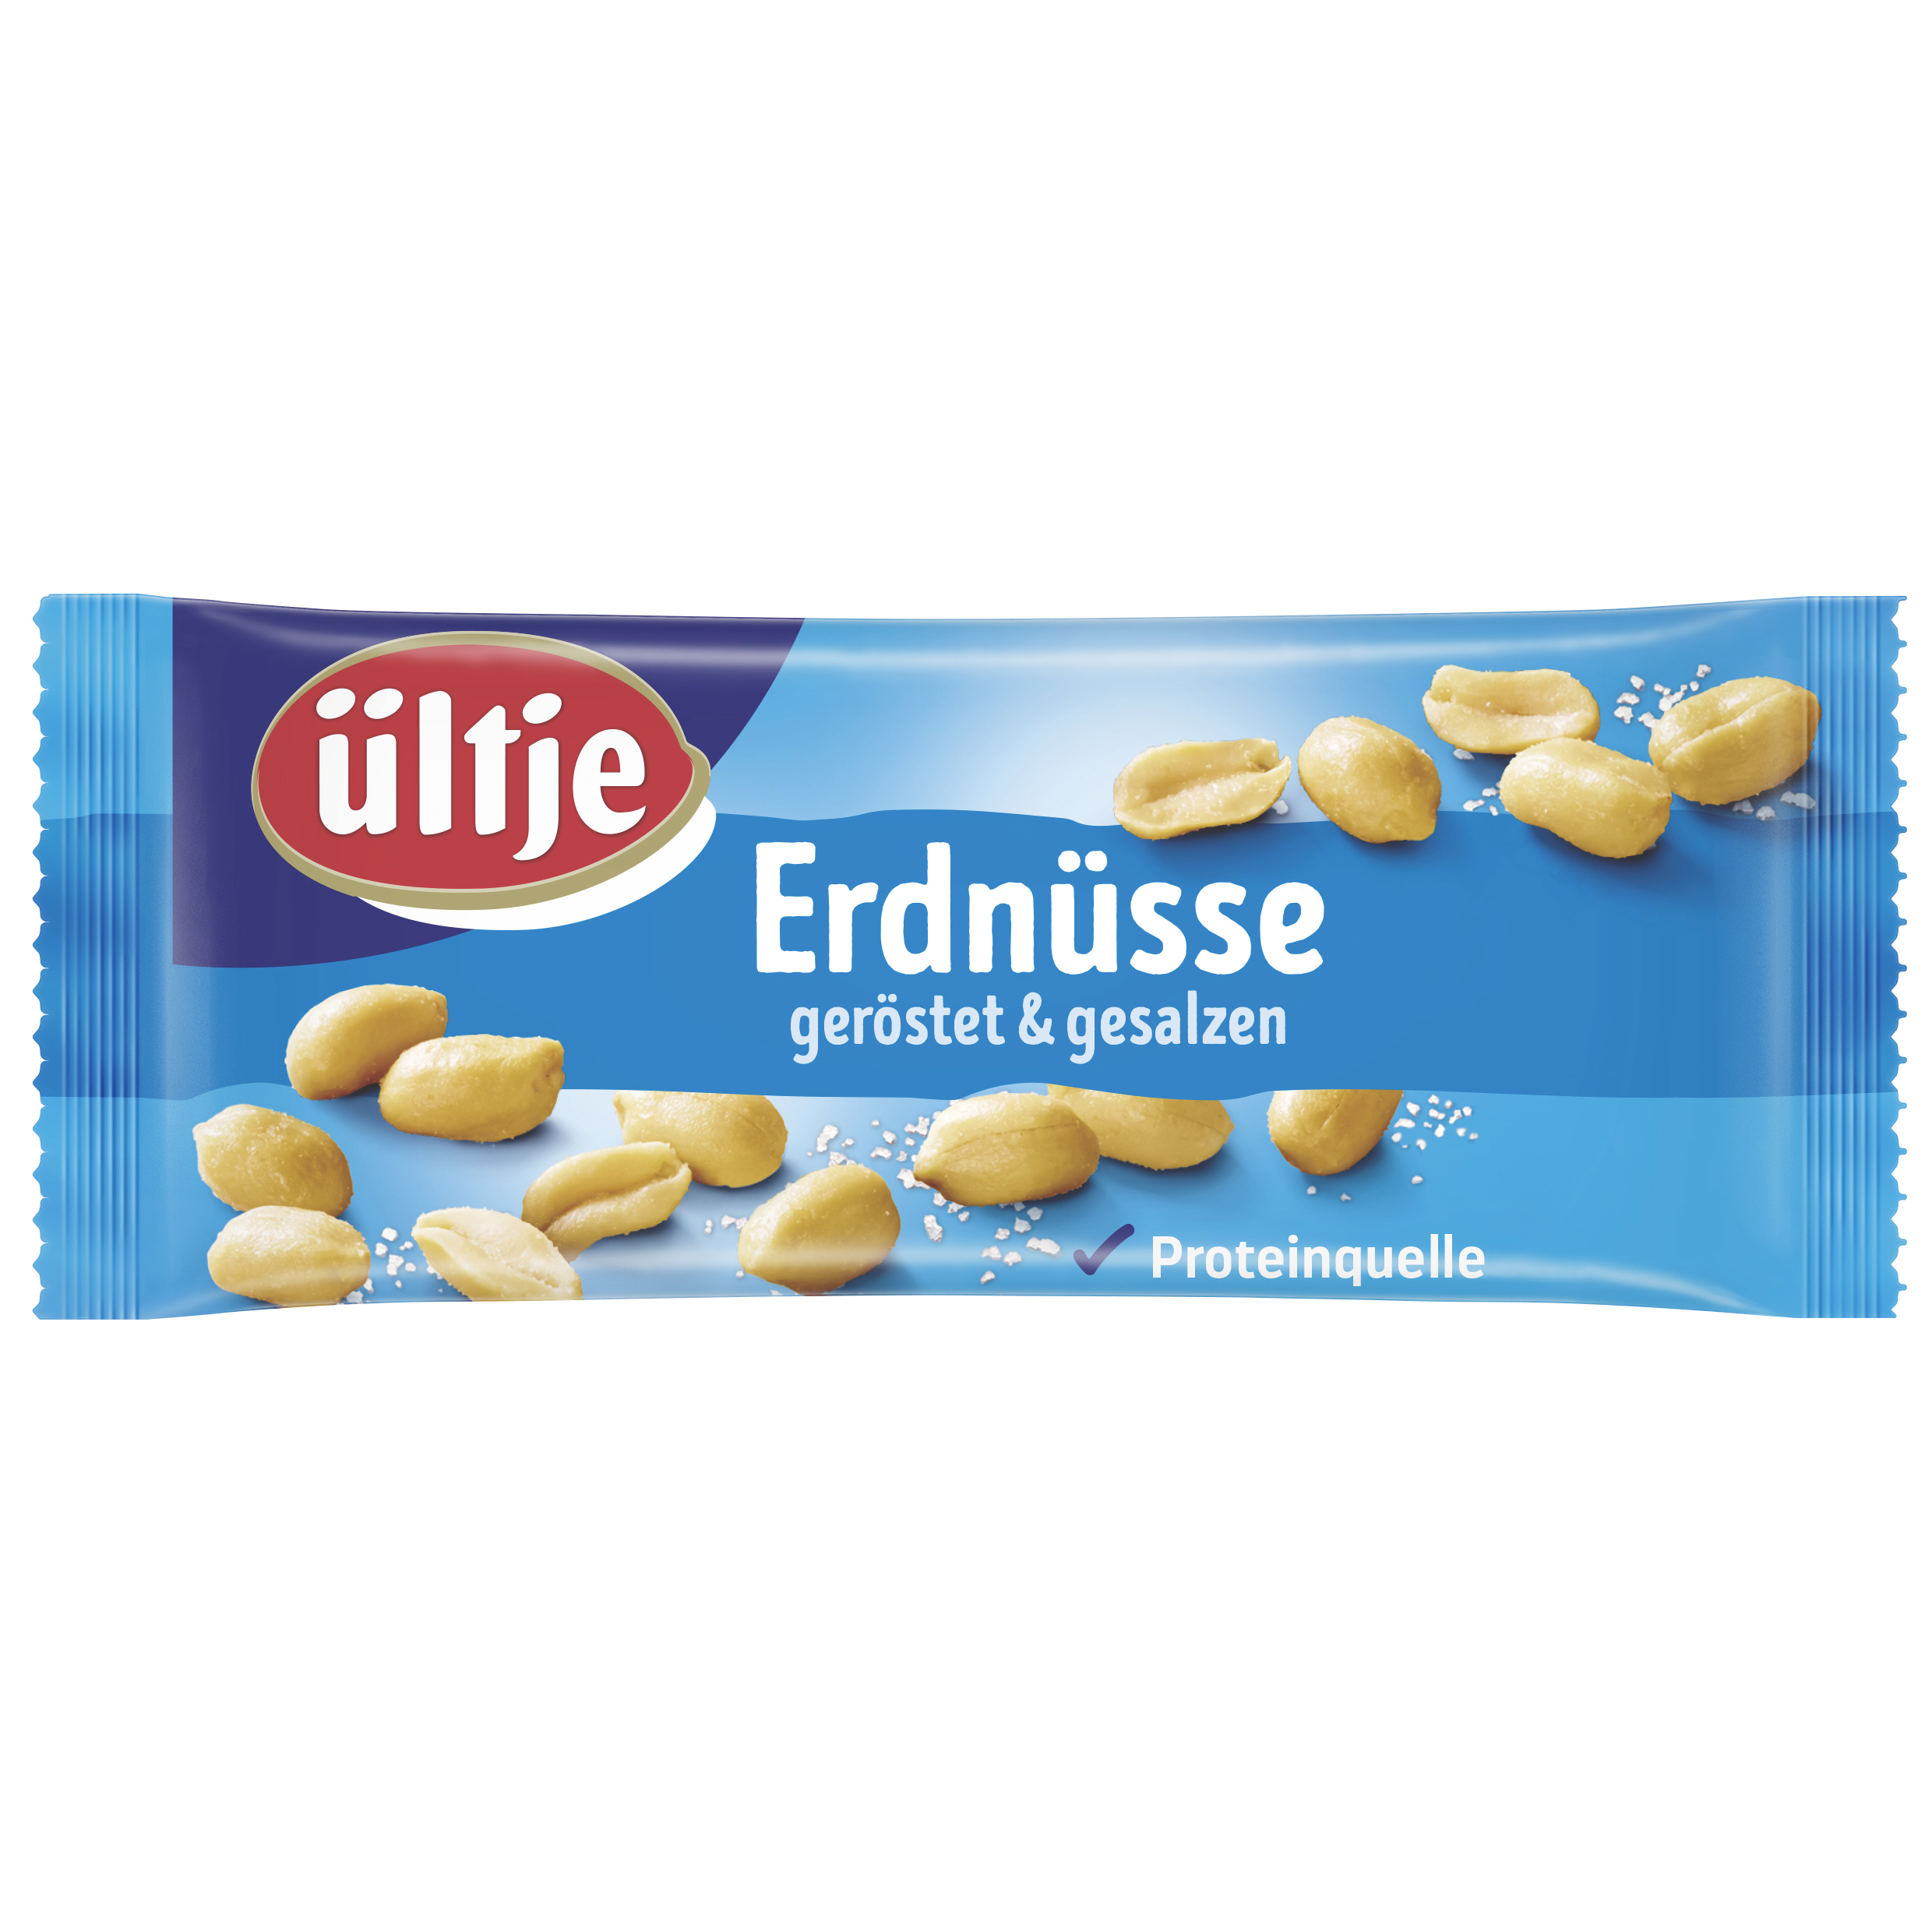 ültje Erdnüsse, geröstet & gesalzen, 50g Riegelbeutel